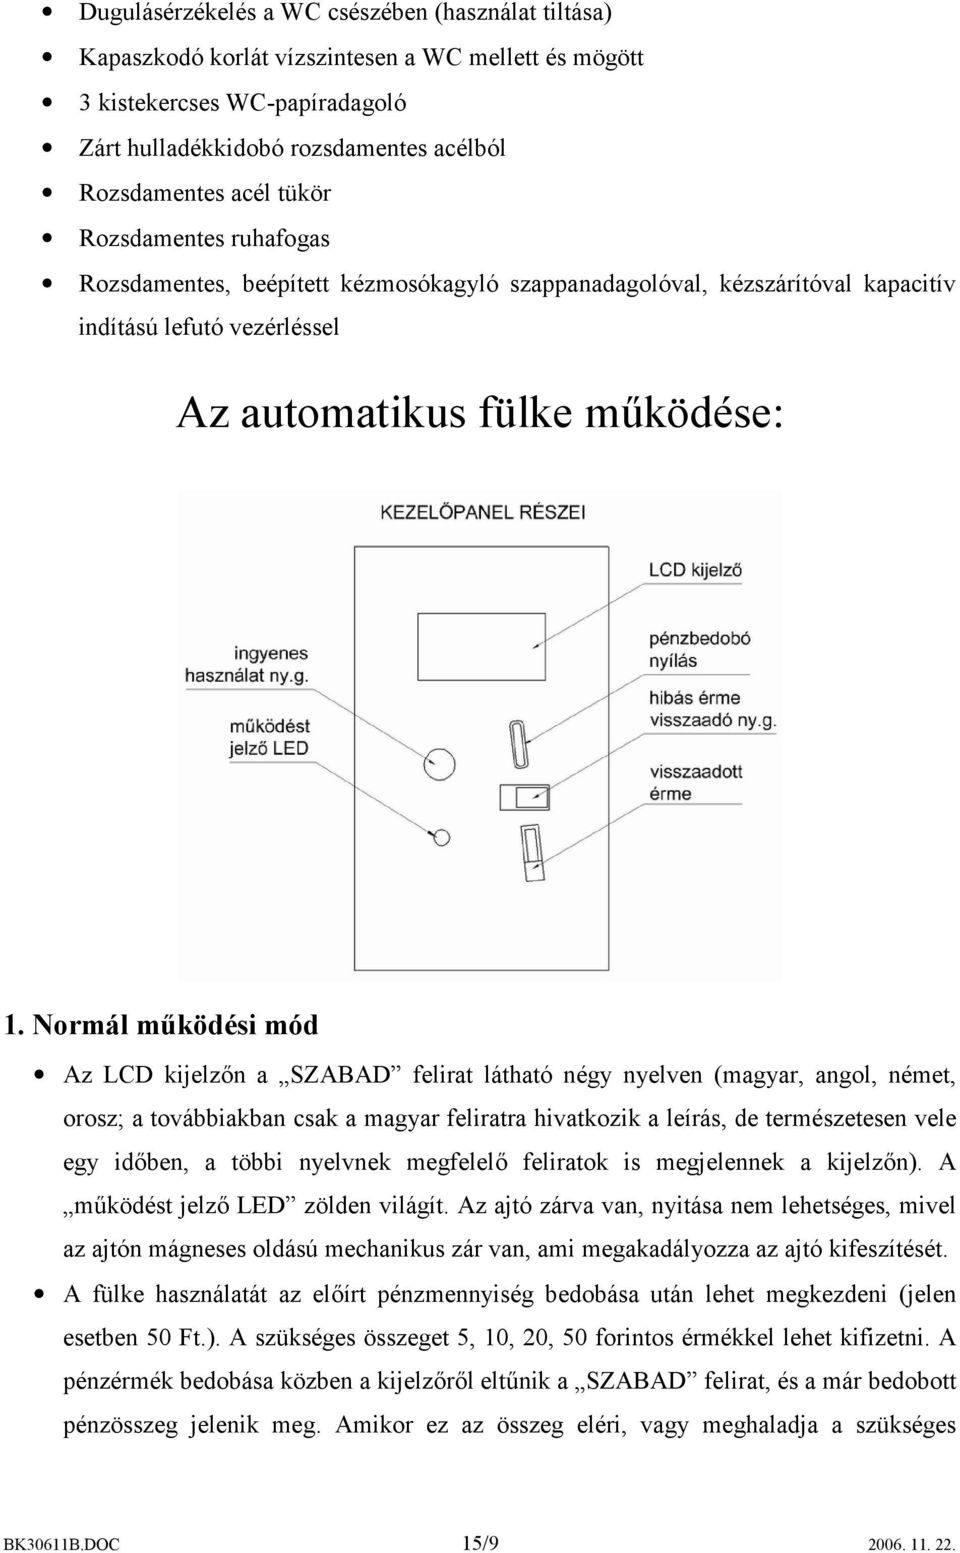 Normál működési mód Az LCD kijelzőn a SZABAD felirat látható négy nyelven (magyar, angol, német, orosz; a továbbiakban csak a magyar feliratra hivatkozik a leírás, de természetesen vele egy időben, a